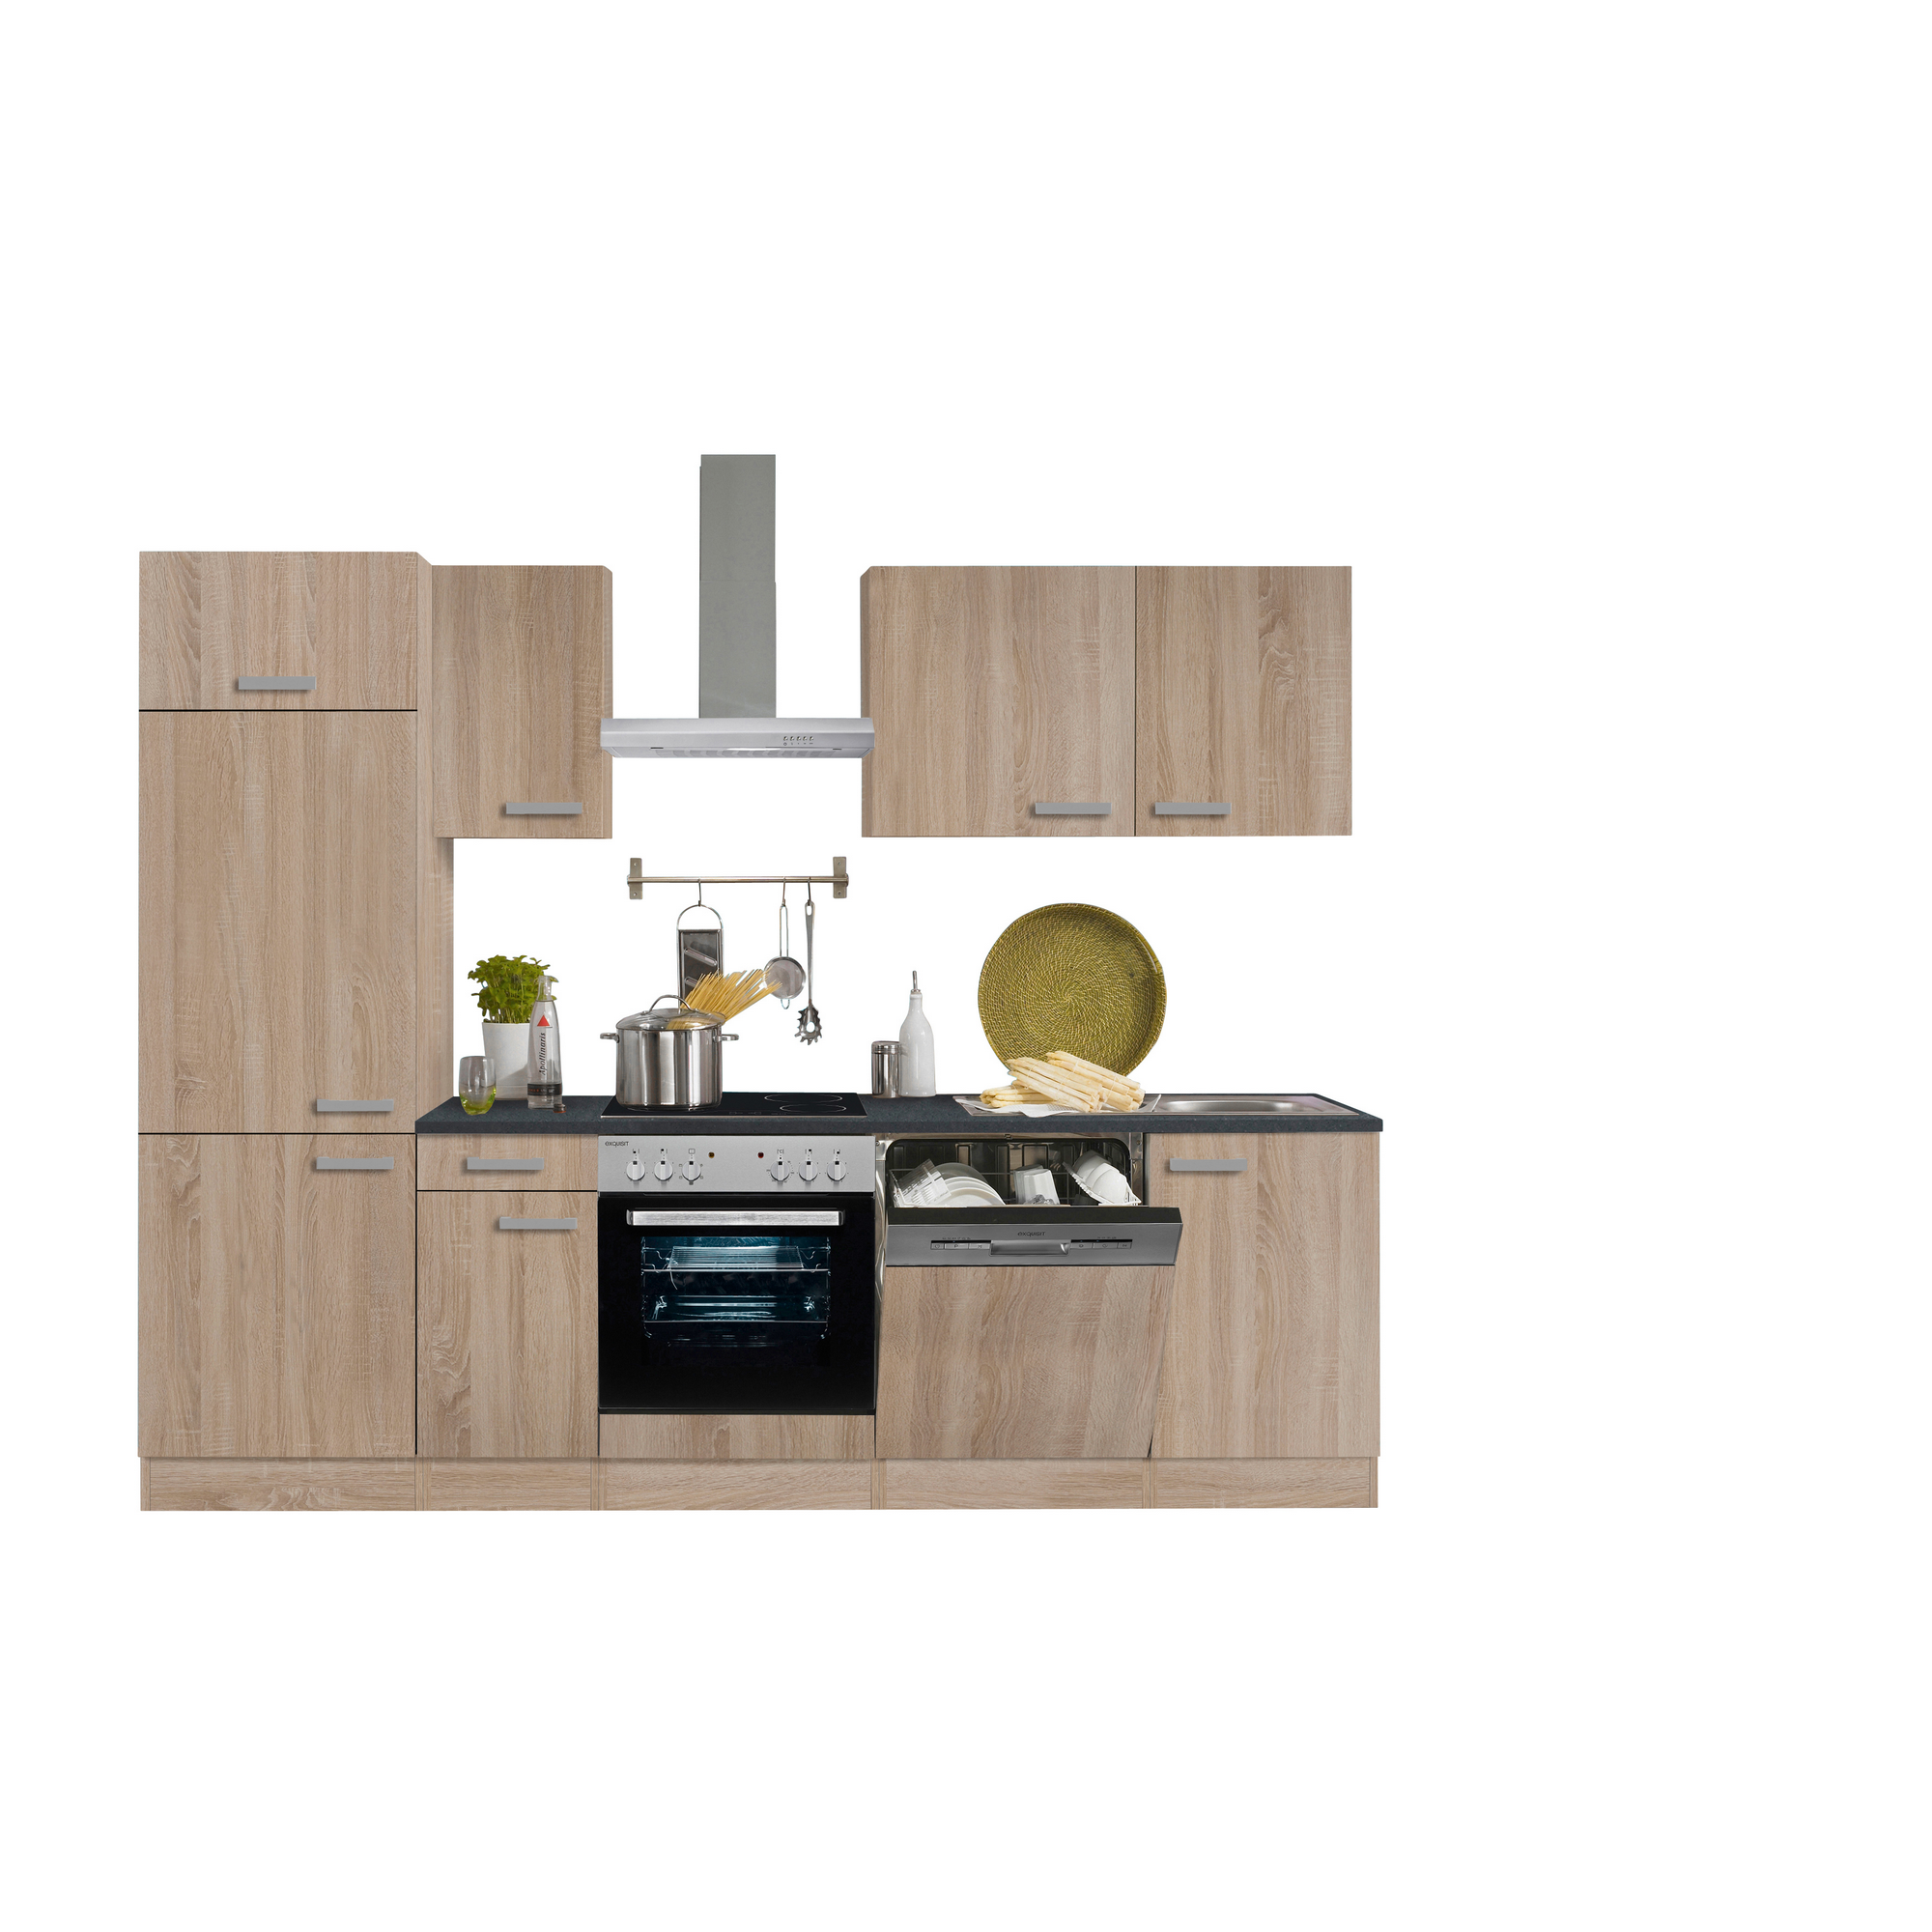 Küchenzeile mit E-Geräten 'OPTIkompakt Monza' eichefarben/anthrazit 270 cm + product picture